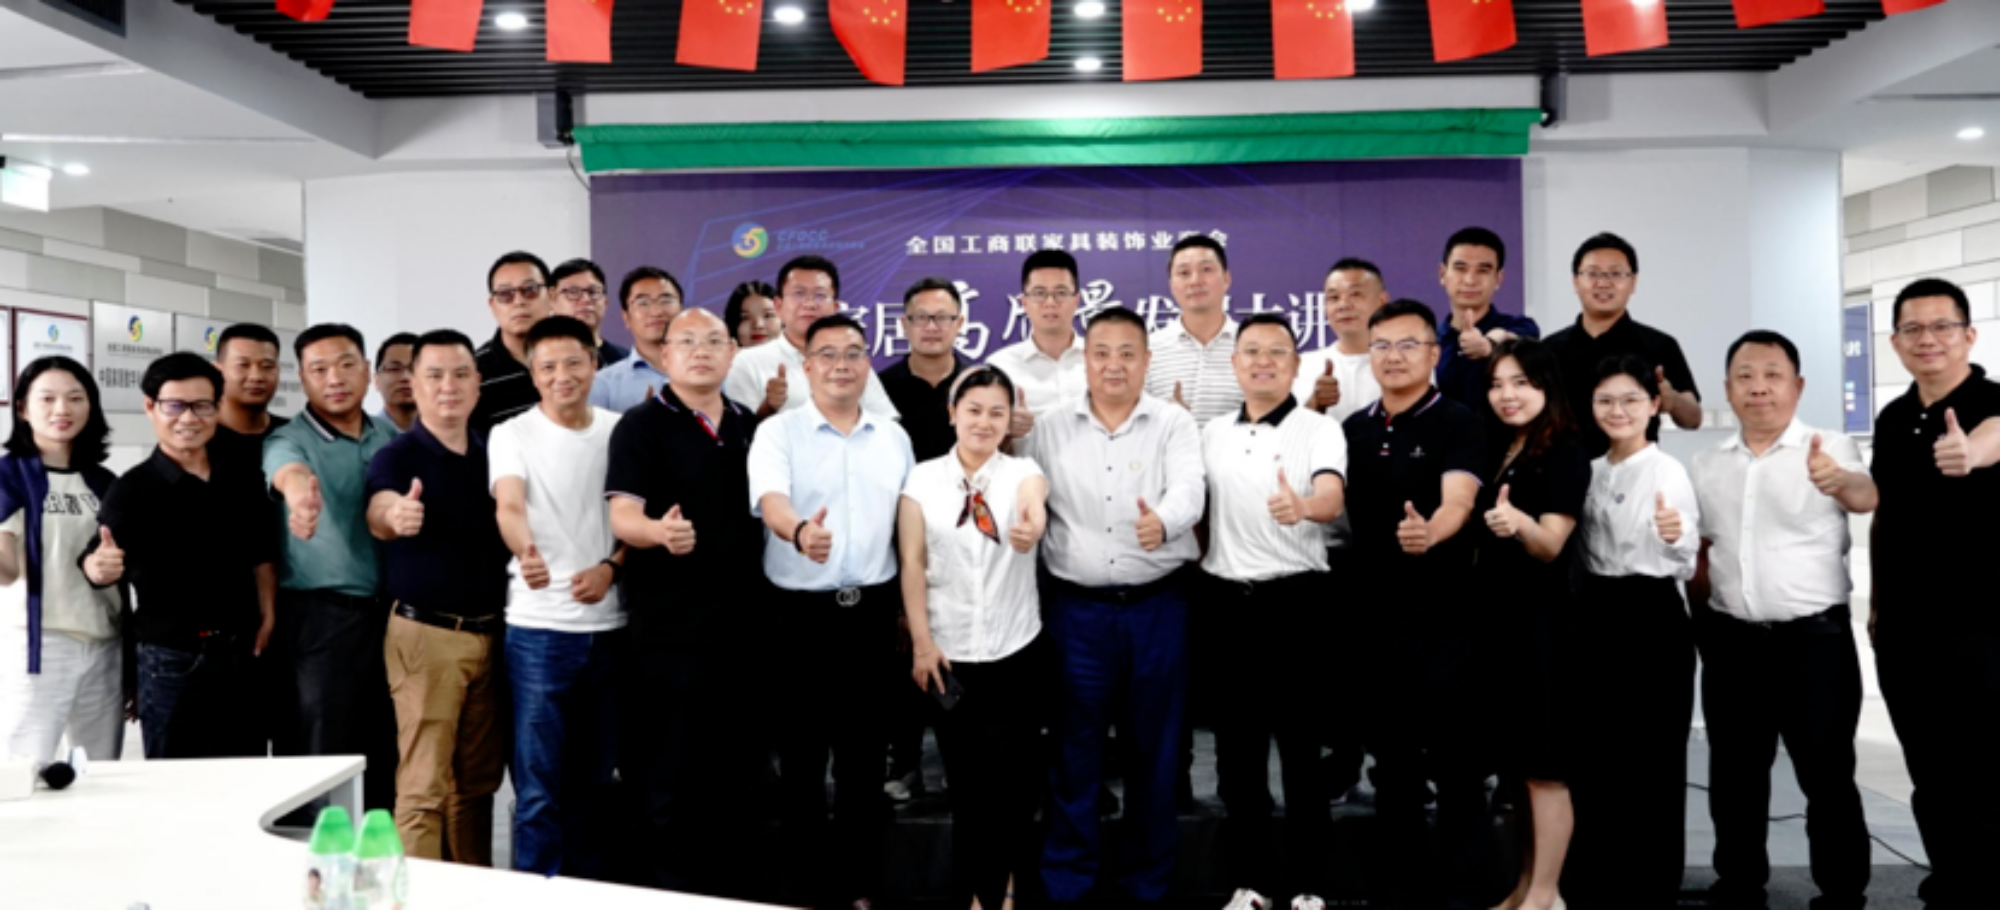 Fuqizimi i Ndërmarrjeve, Zhvillimi Koherues, Kina Mobilimi i Shtëpisë Salla Leksionesh e Zhvillimit me Cilësi të Lartë, Faza 2 e Aktivitetit të Sallonit Offline, mbajtur në Guangzhou